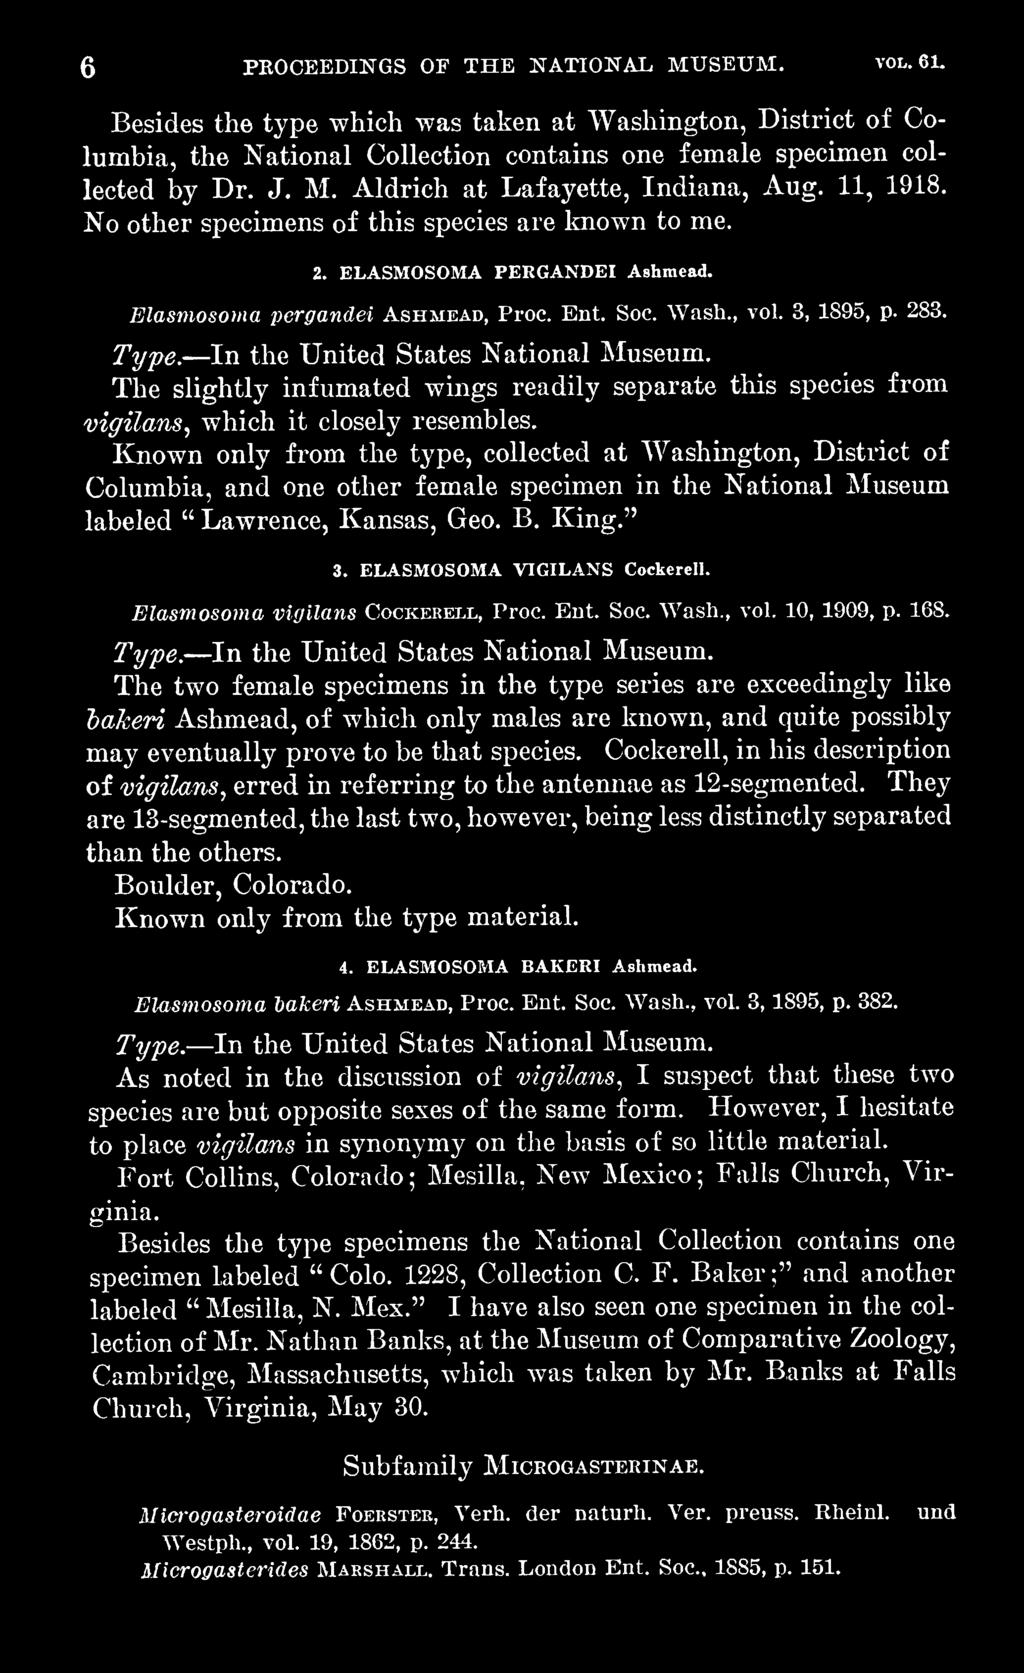 ELASMOSOMA VIGILANS Cockerell. Elasmosoma vigilans Cockerell, Proc. Ent. Soc. Wash., vol. 10, 1909, p. 168. Type. In the United States National Museum.